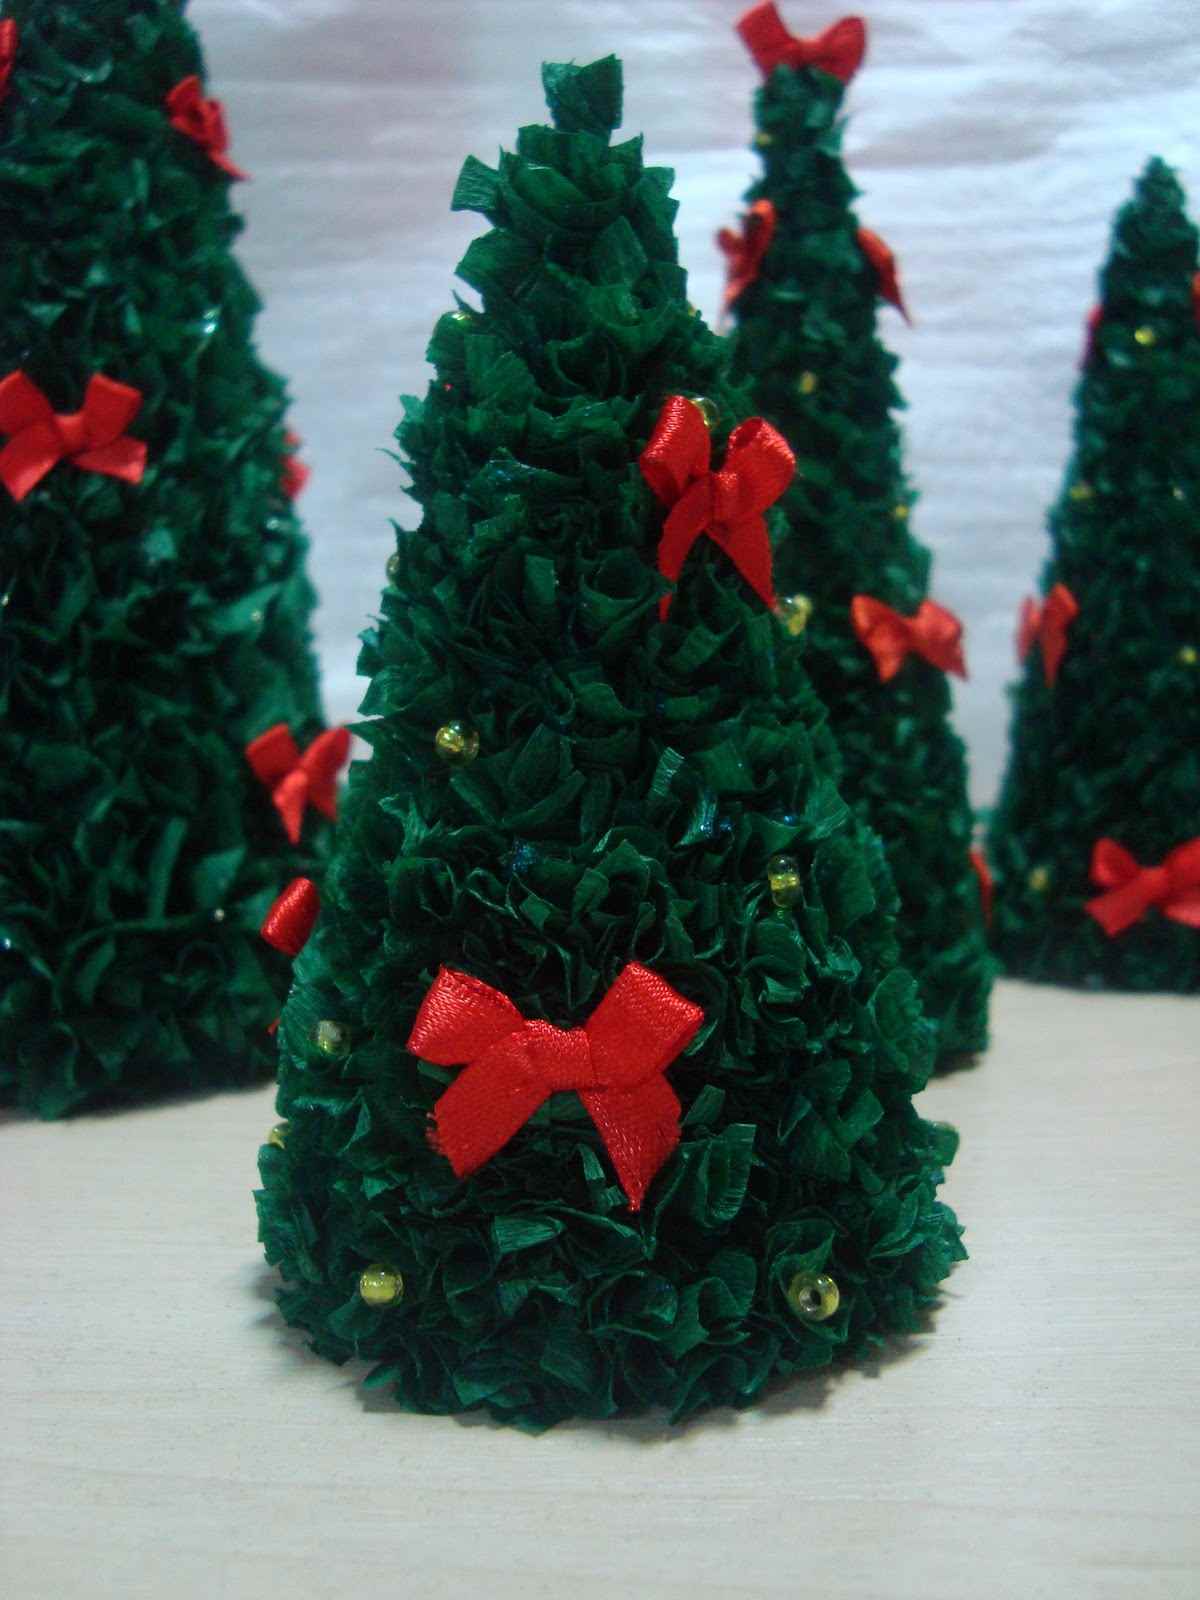 Het idee om zelf een prachtige kerstboom van karton te maken